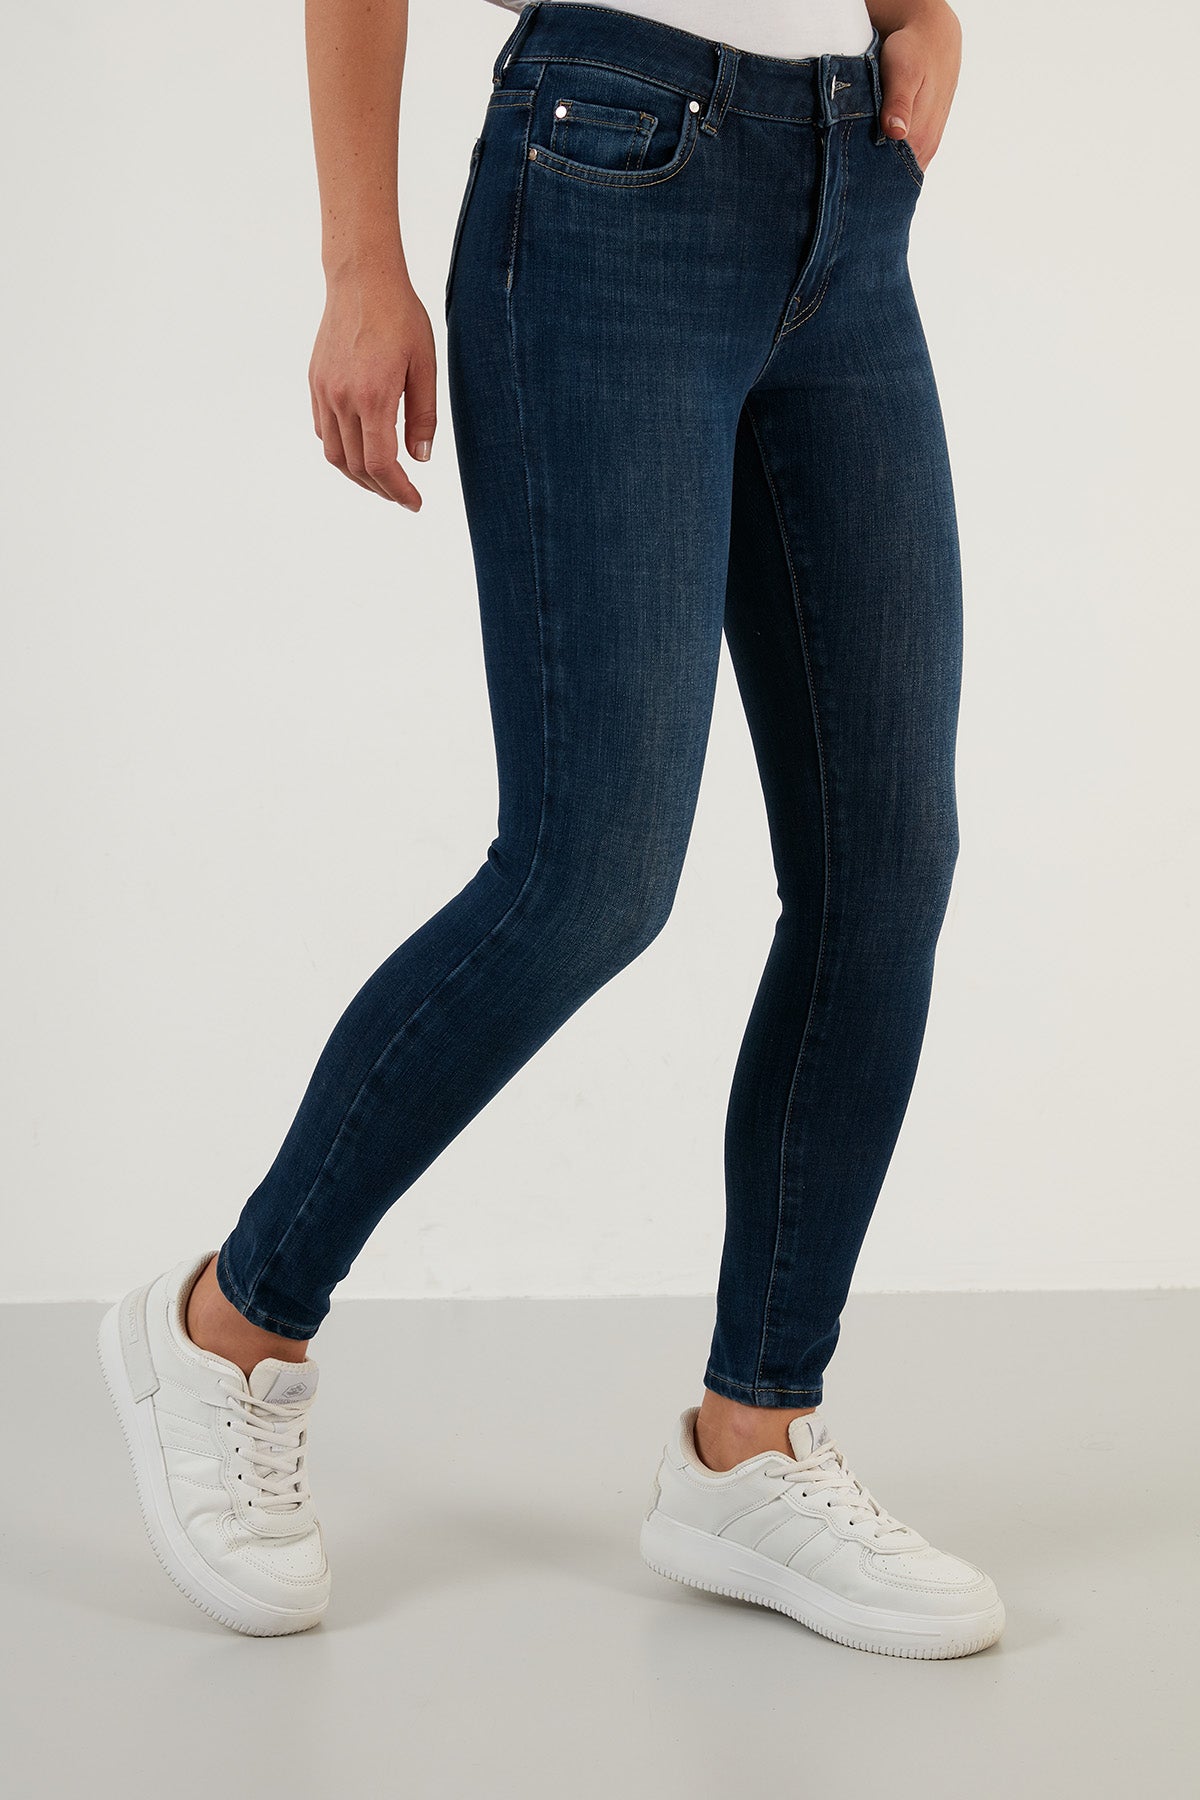 ג'ינס סקיני בגזרה גבוהה